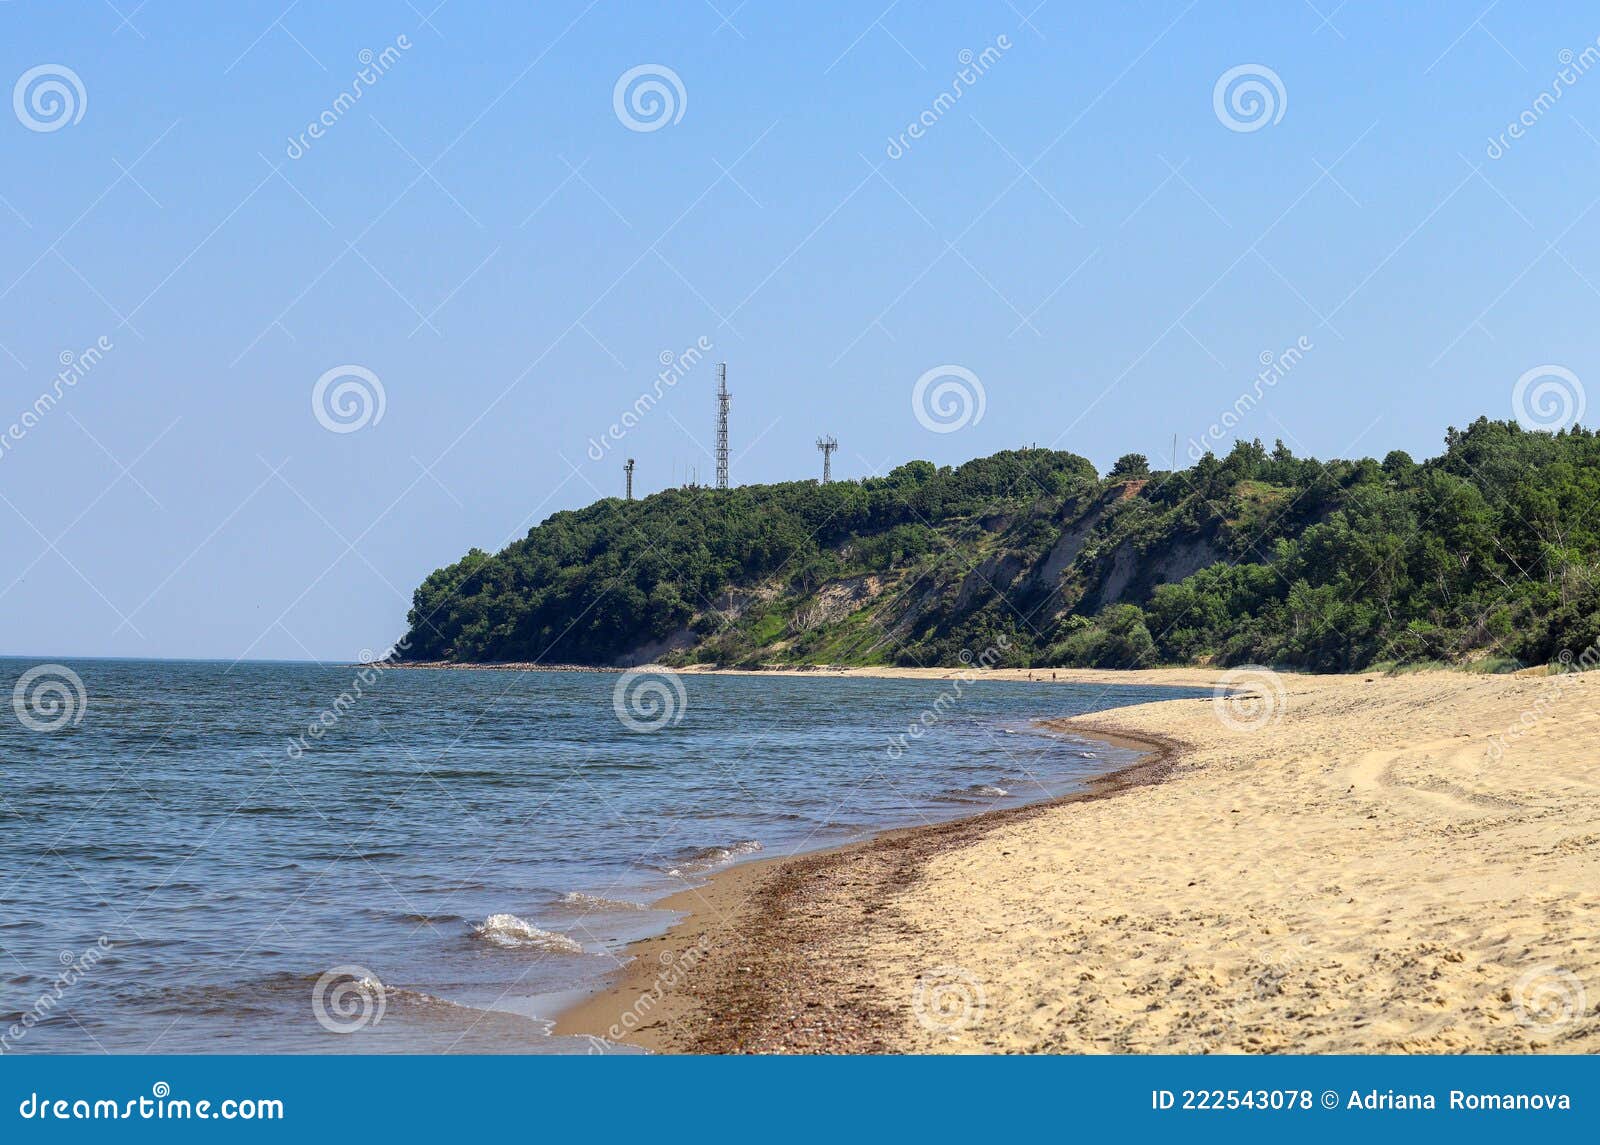 cape taran. the coast of the baltic sea